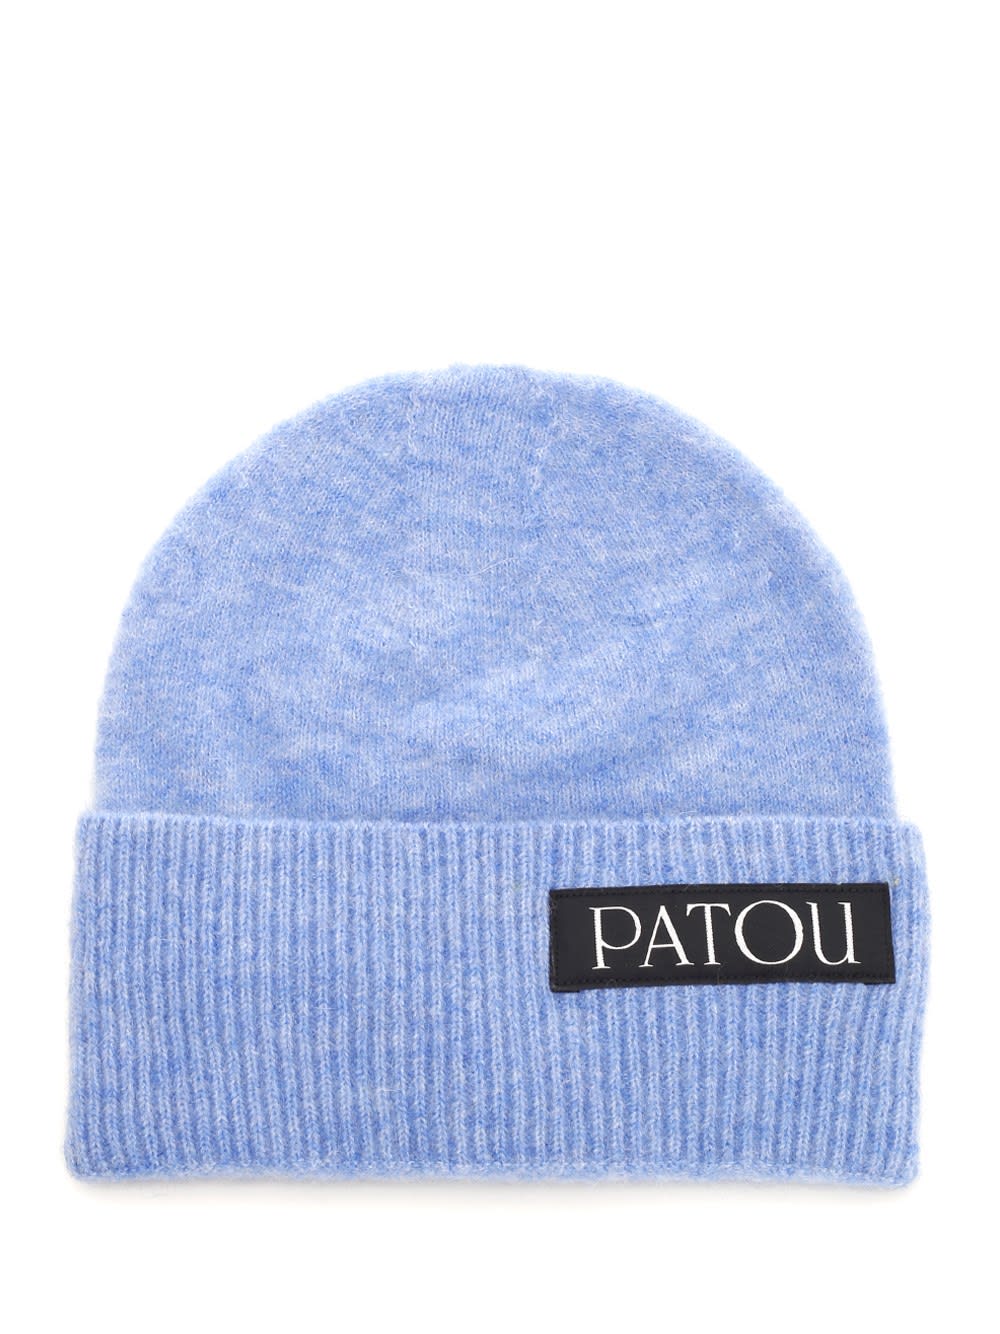 Patou Alpaca Hat In Light Blue